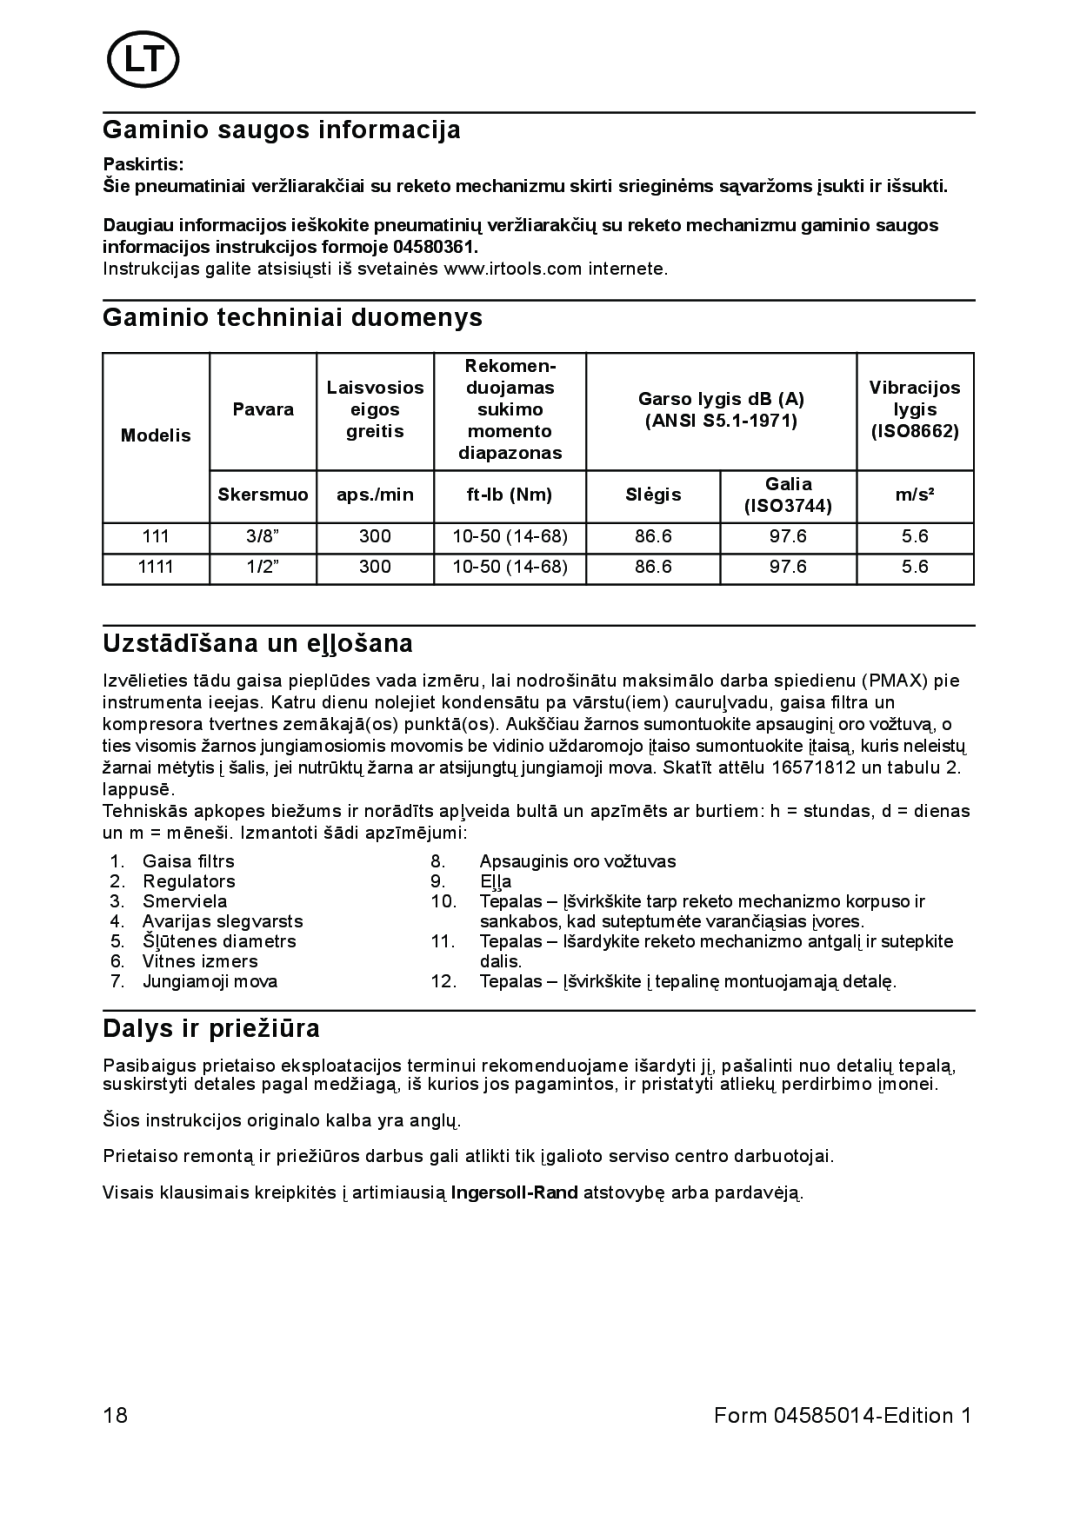 Ingersoll-Rand 1111 Gaminio saugos informacija, Gaminio techniniai duomenys, Uzstādīšana un eļļošana, Dalys ir priežiūra 